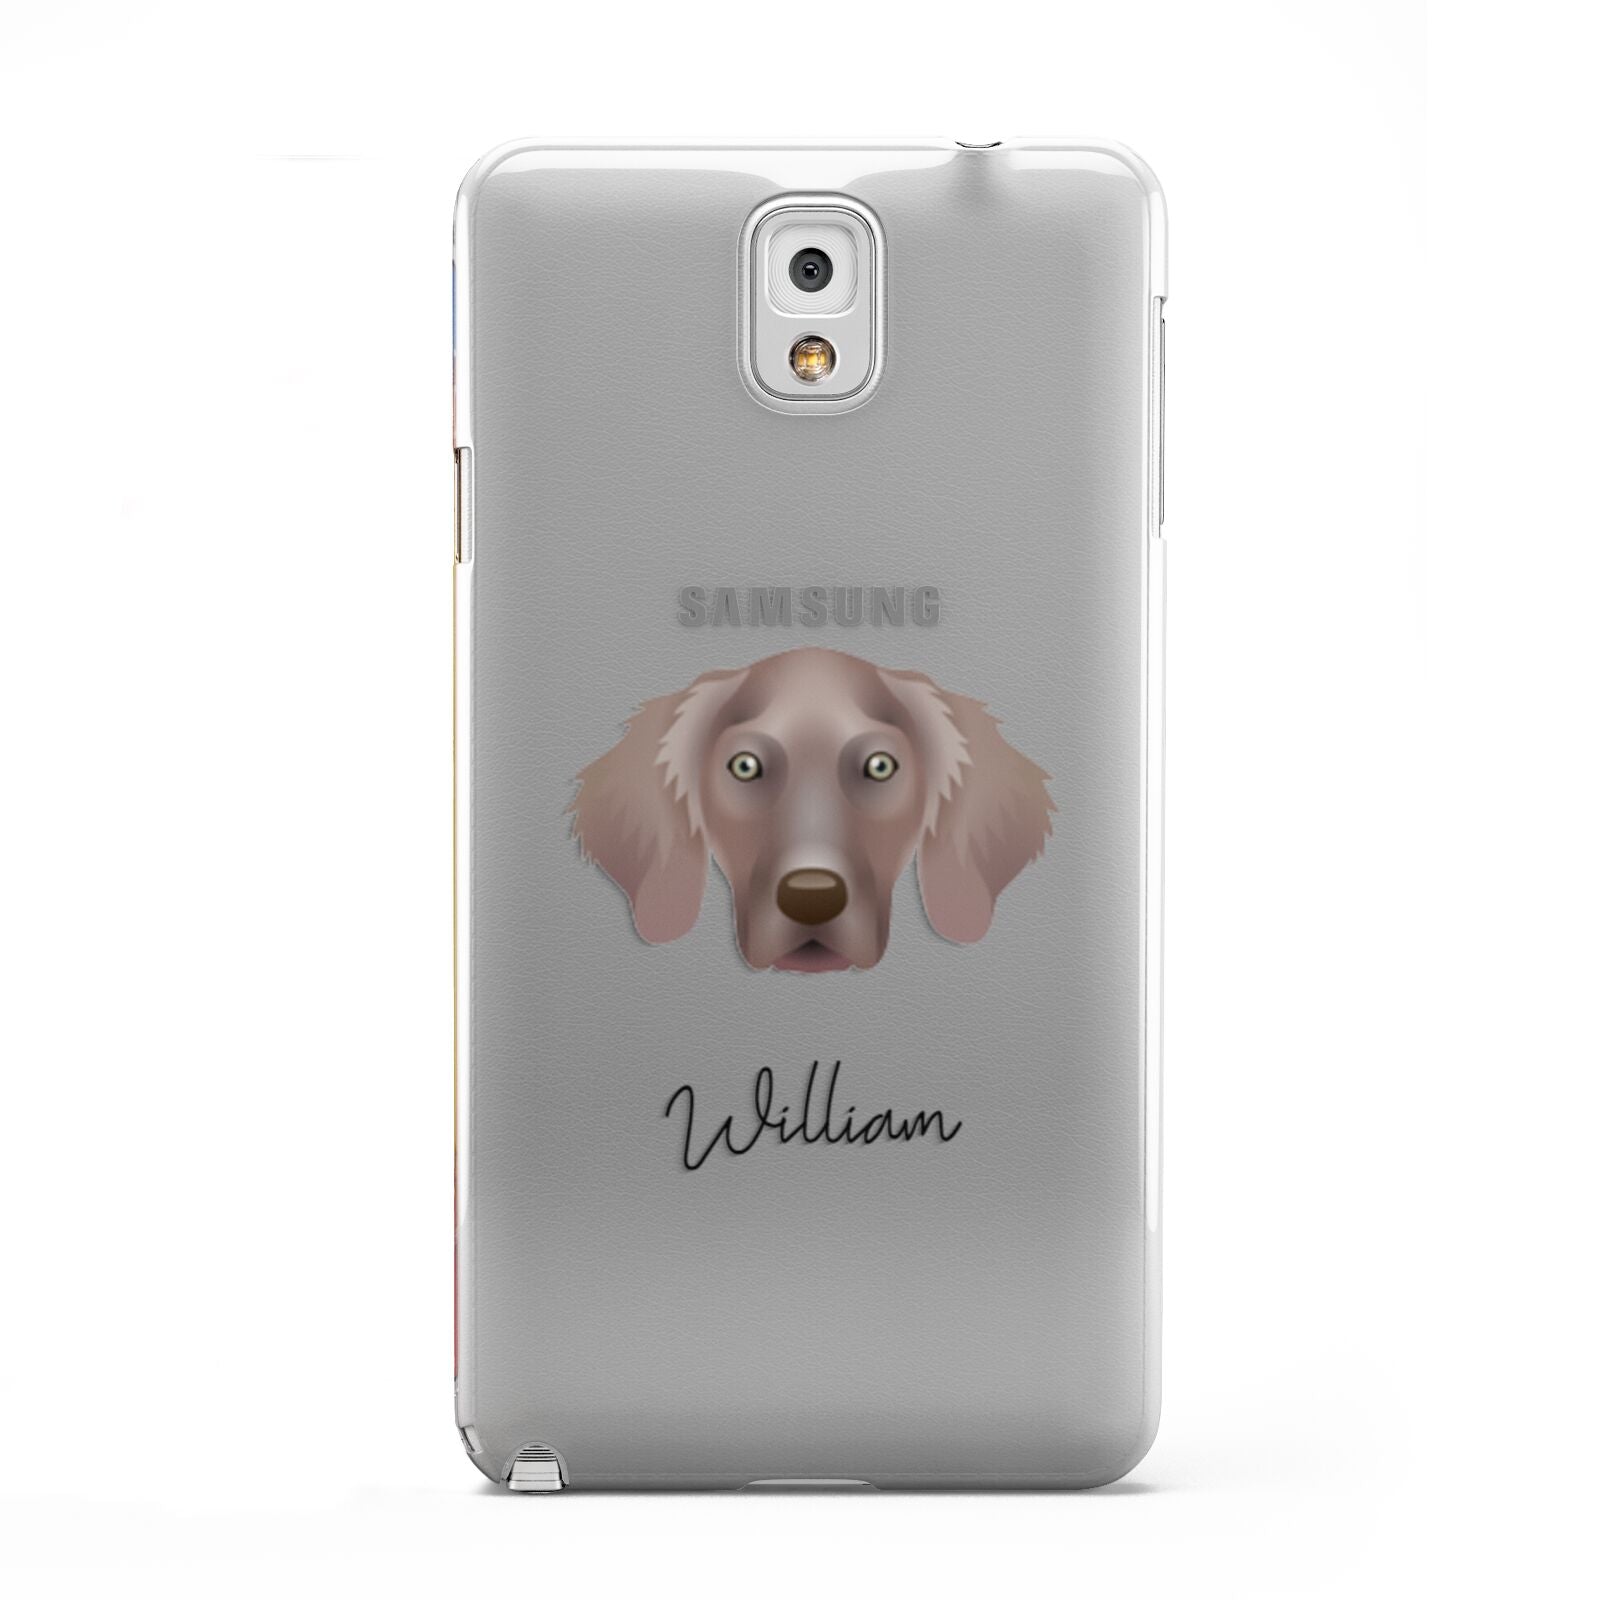 Weimaraner Personalised Samsung Galaxy Note 3 Case